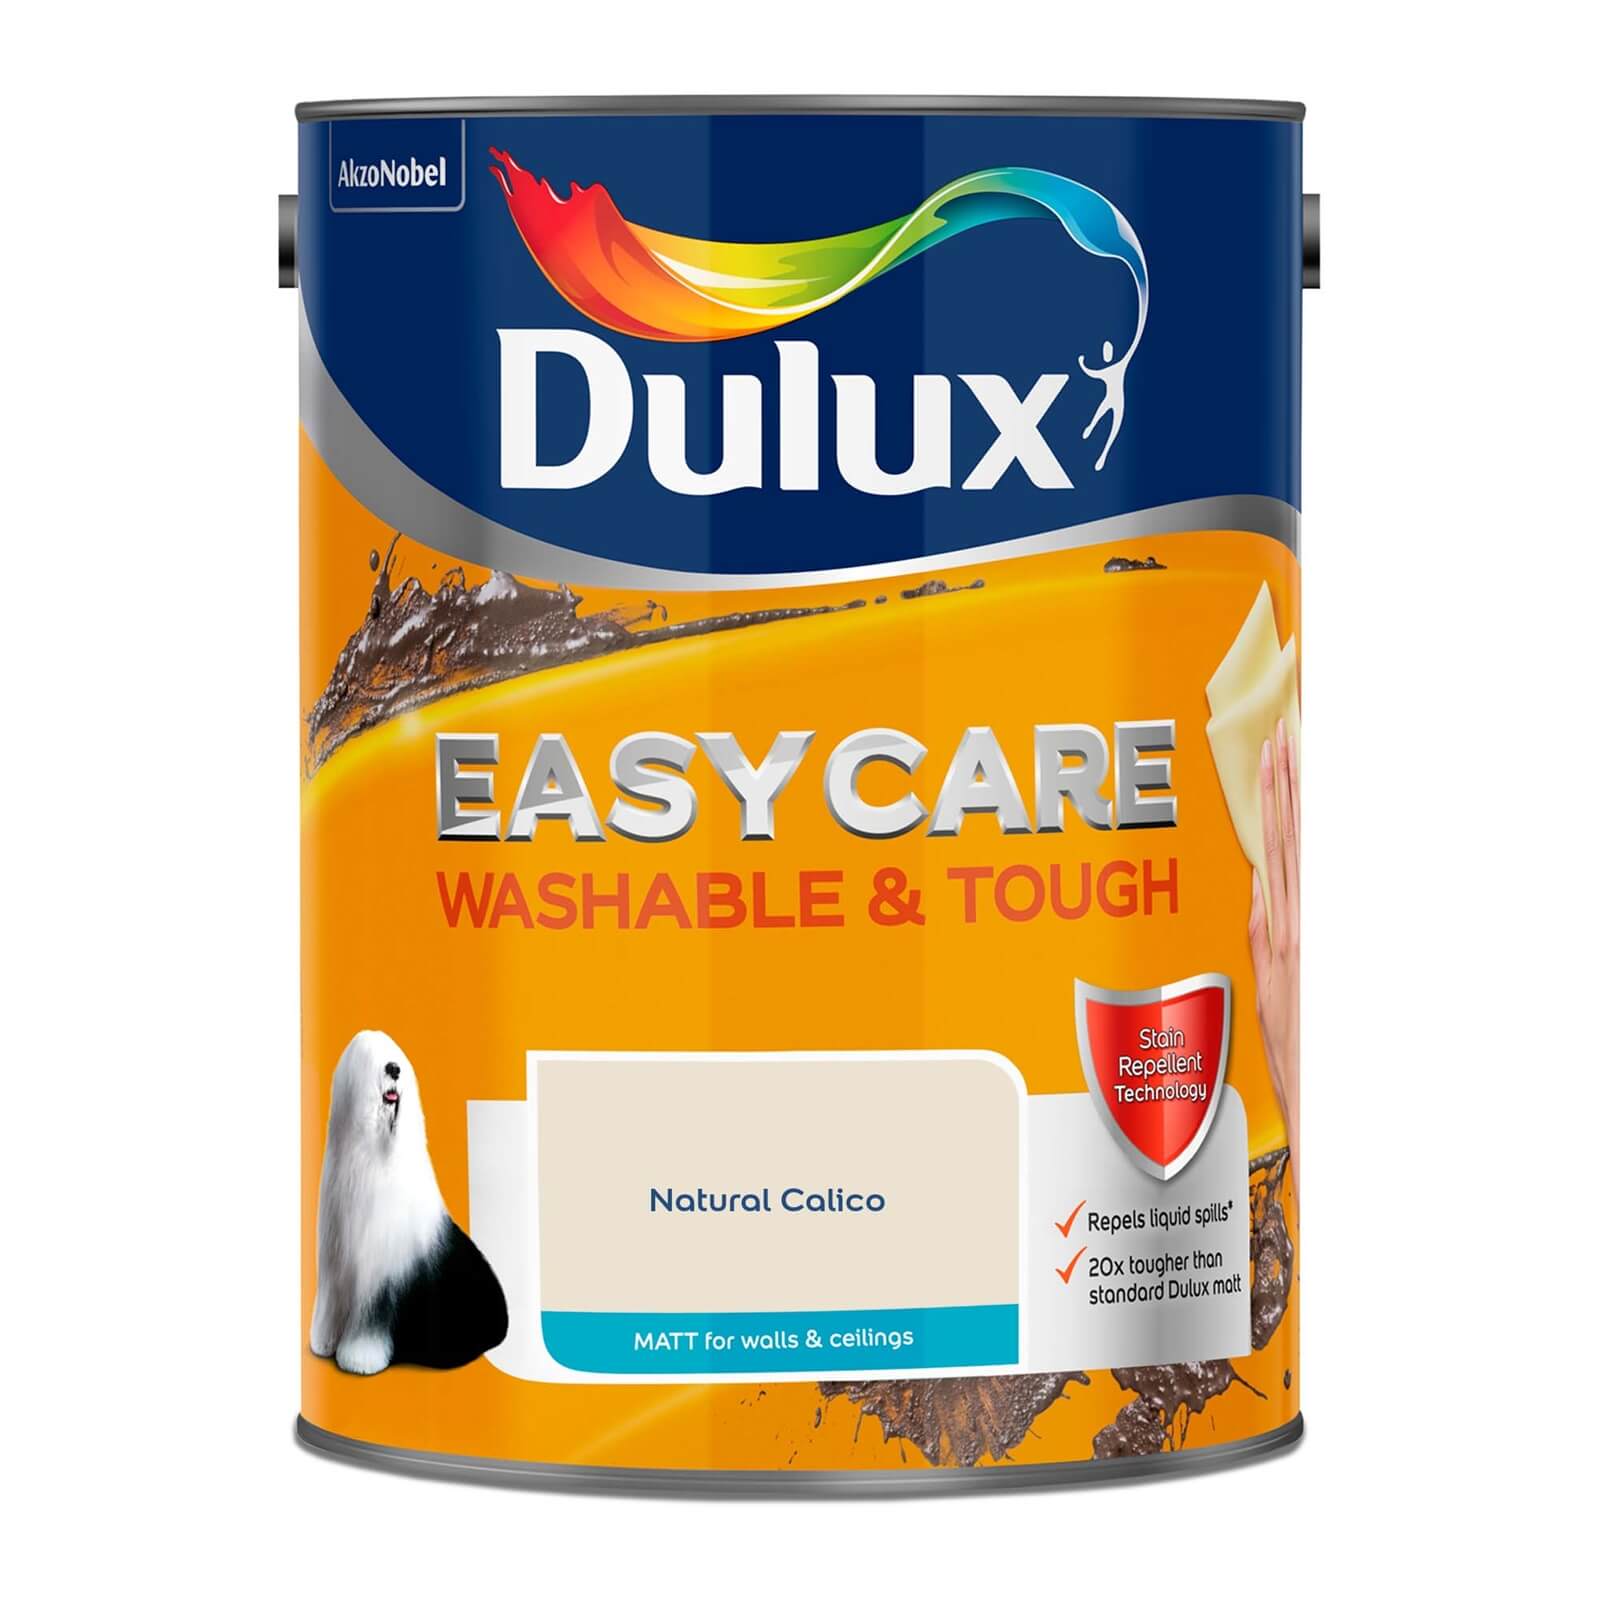 Dulux Easycare Washable & Tough Matt Paint Natural Calico - 5L